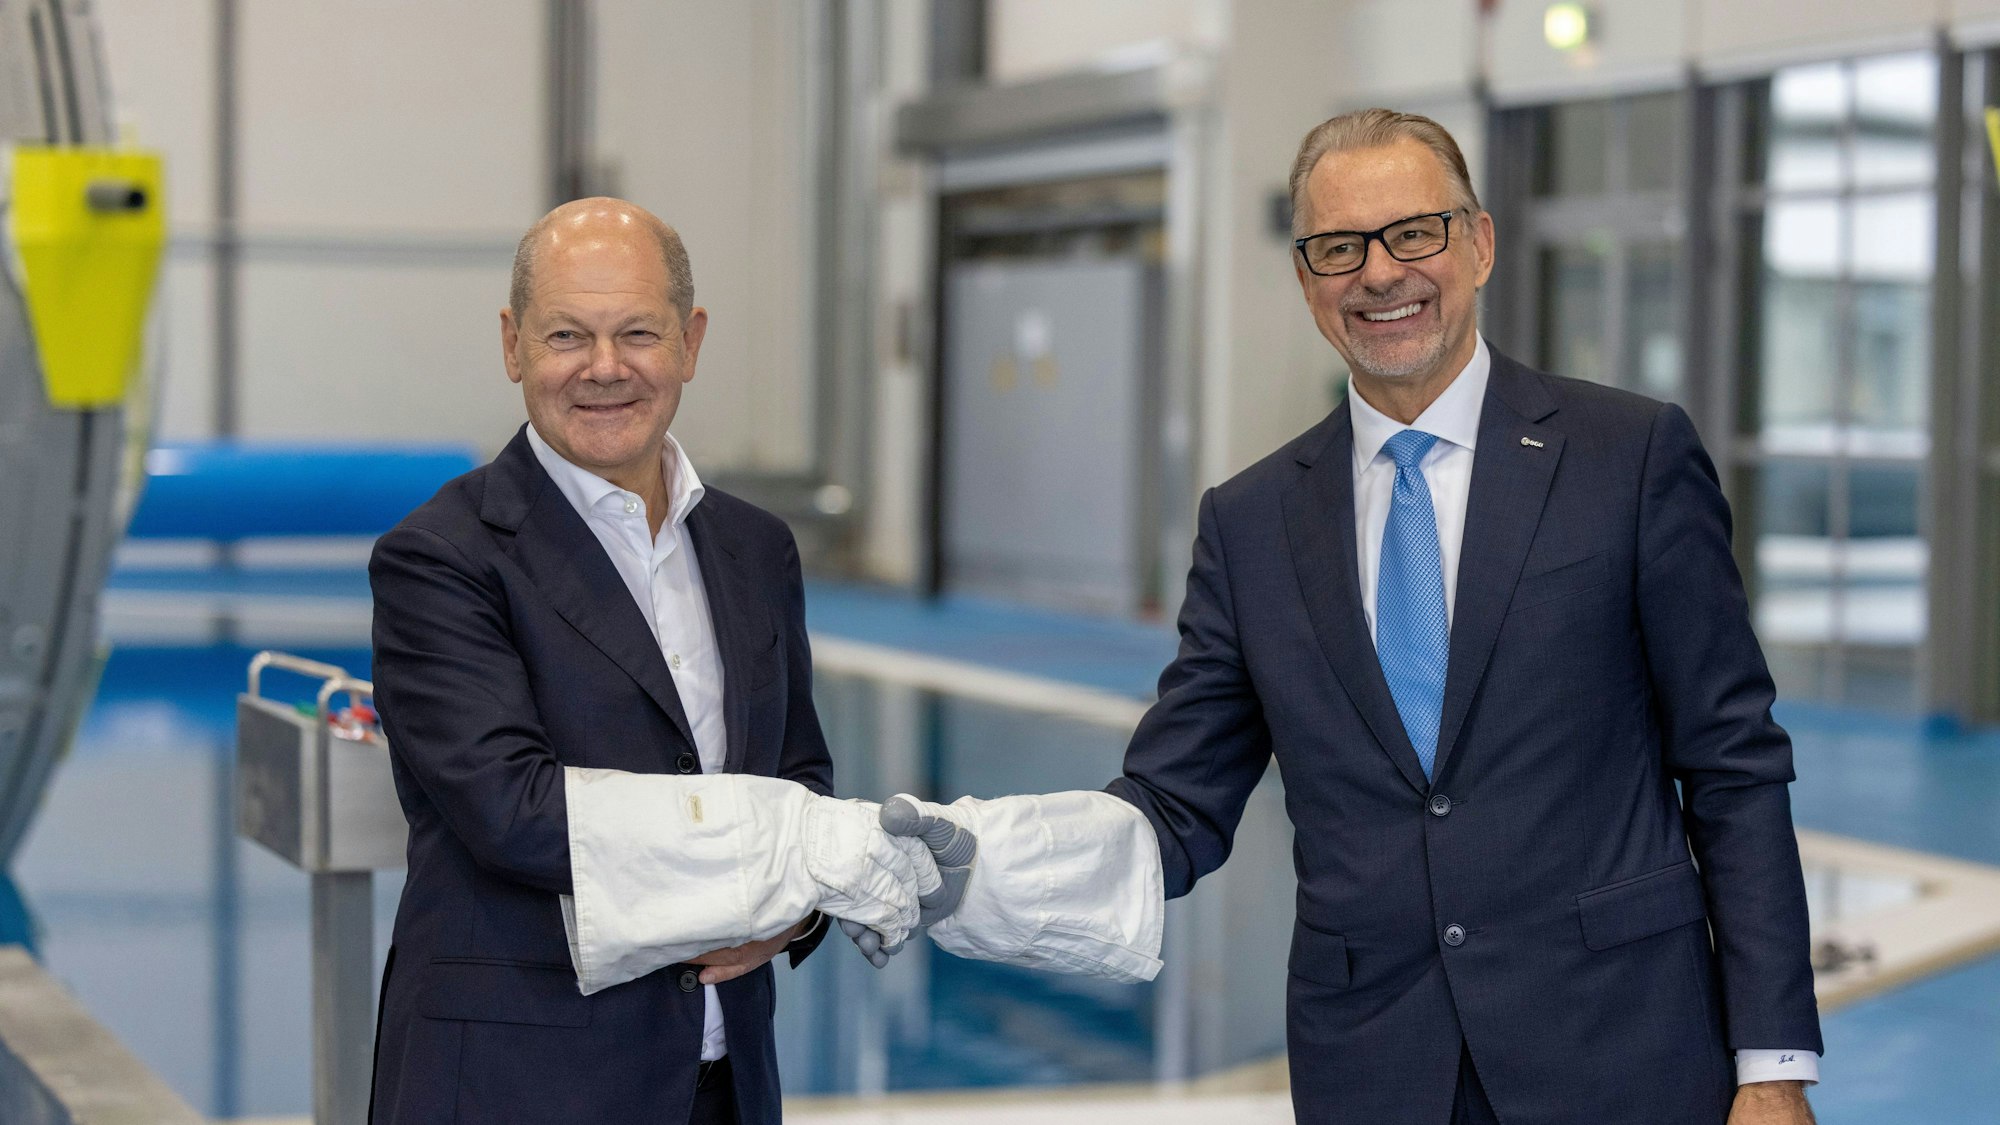 Mit Astronautenhandschuhen gaben sich Bundeskanzler Olaf Scholz (l, SPD) und ESA-Generaldirektor Dr. Josef Aschbacher die Hand während seines Besuchs des Deutschen Zentrum für Luft- und Raumfahrt (DLR) und des Astronautenzentrums der Europäischen Weltraumorganisation ESA.